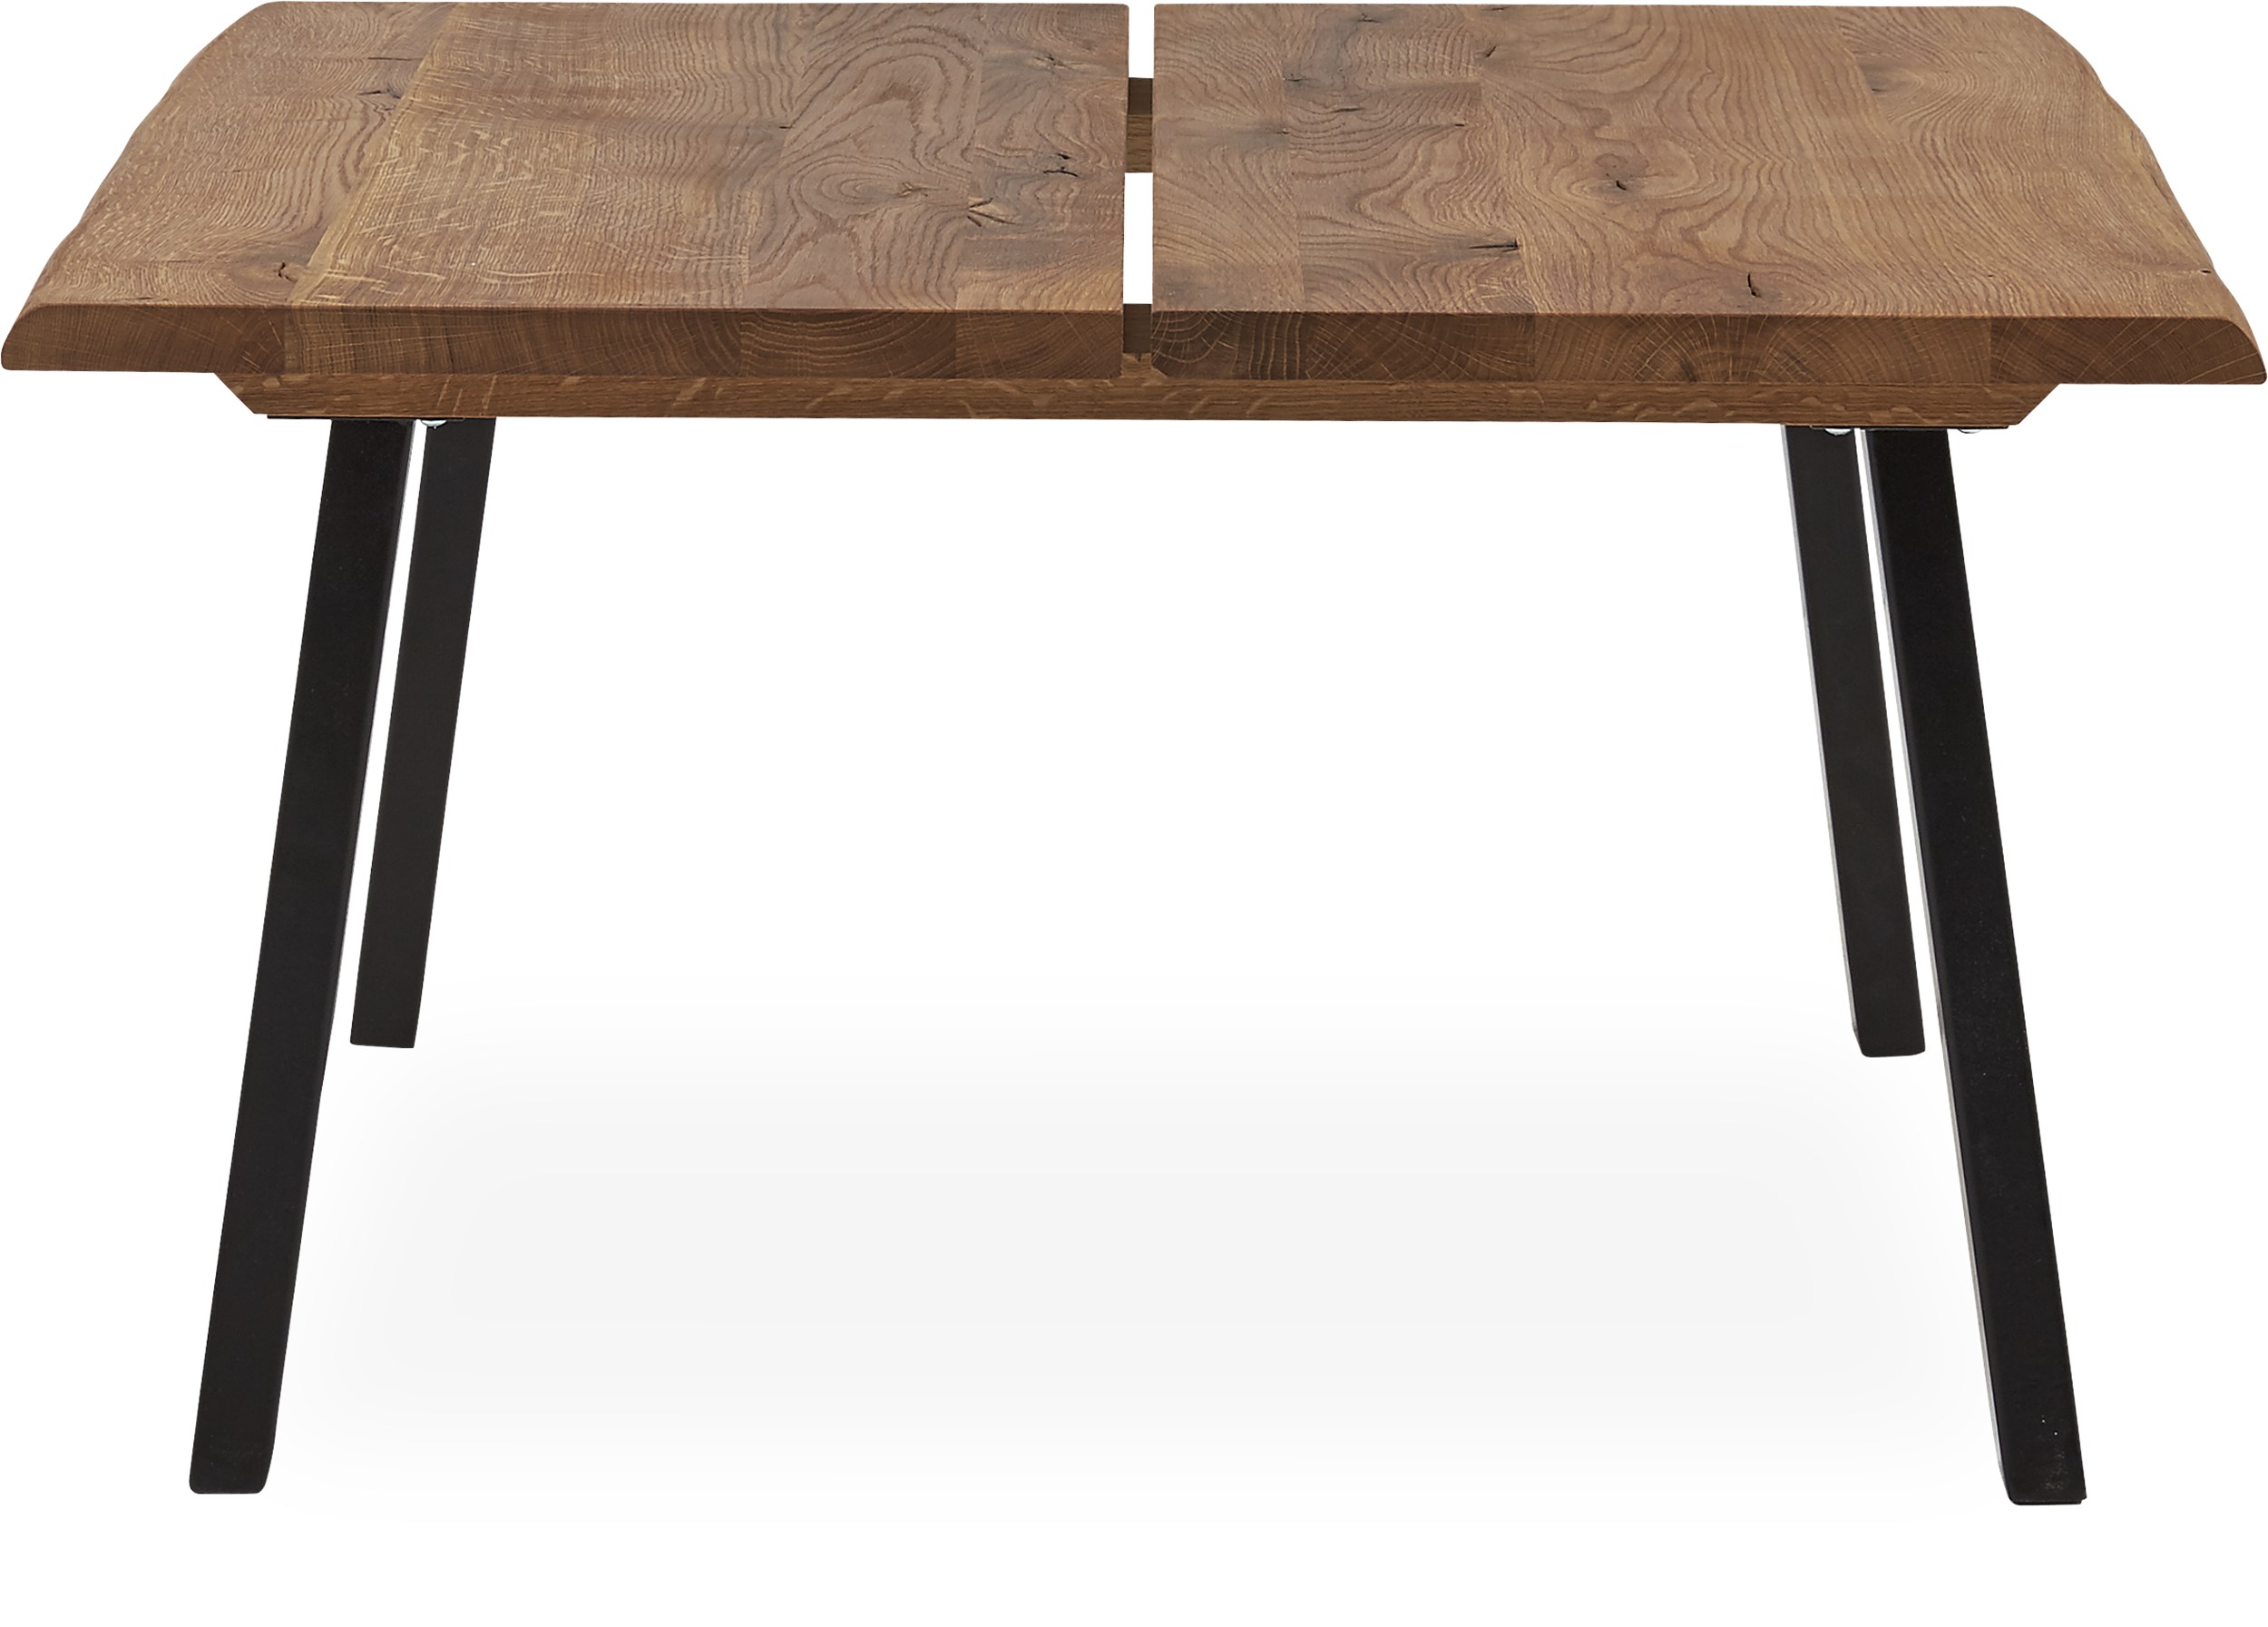 True Soffbord 80 x 45 x 80 cm - Massiv bordsskiva i oljebehandlad ek och ben i svart pulverlackerad metall